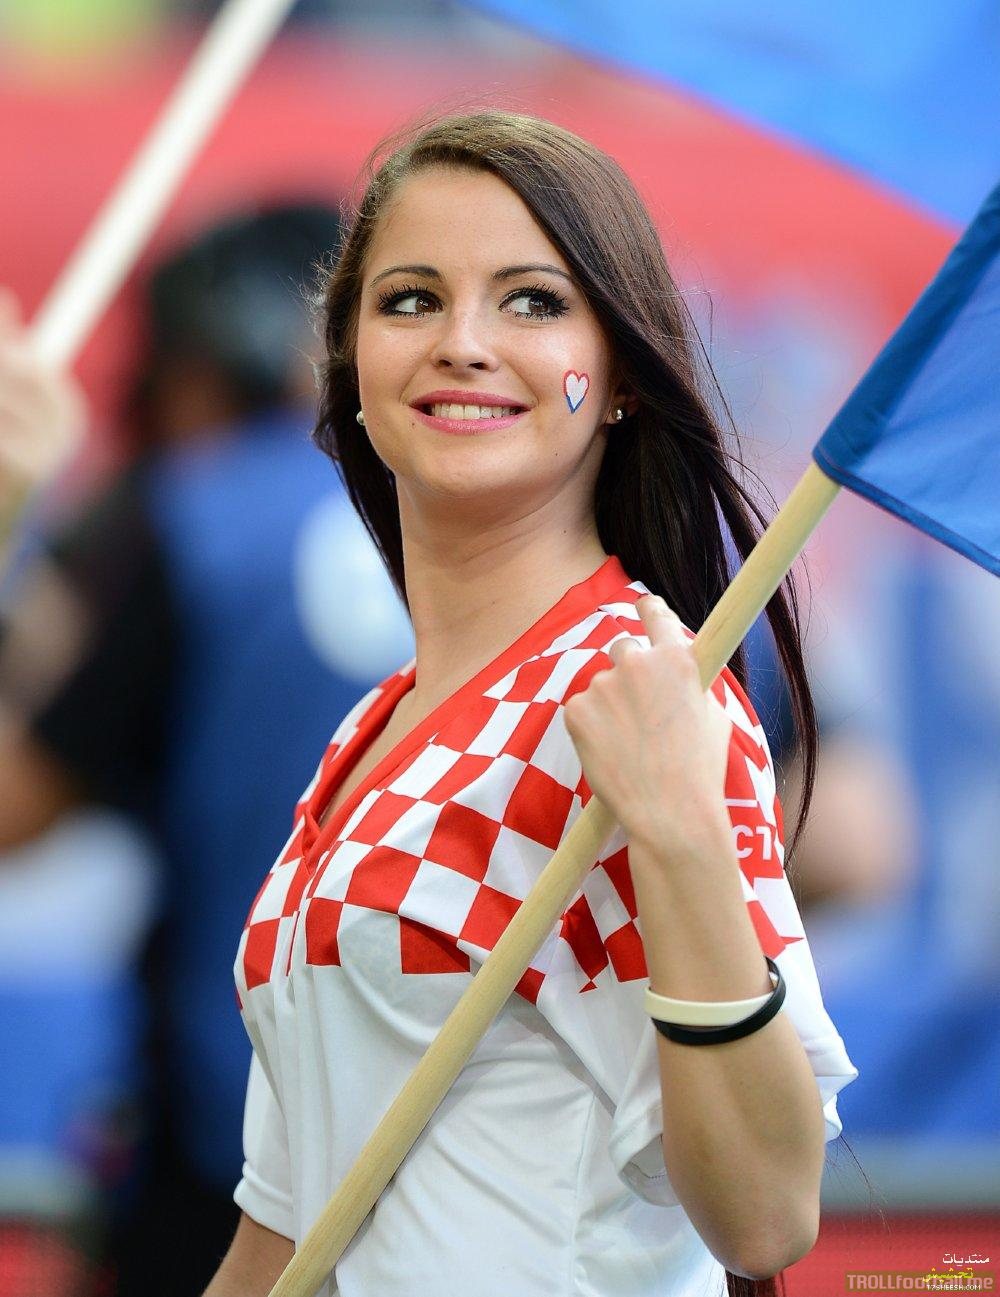 GO GO Croatia!